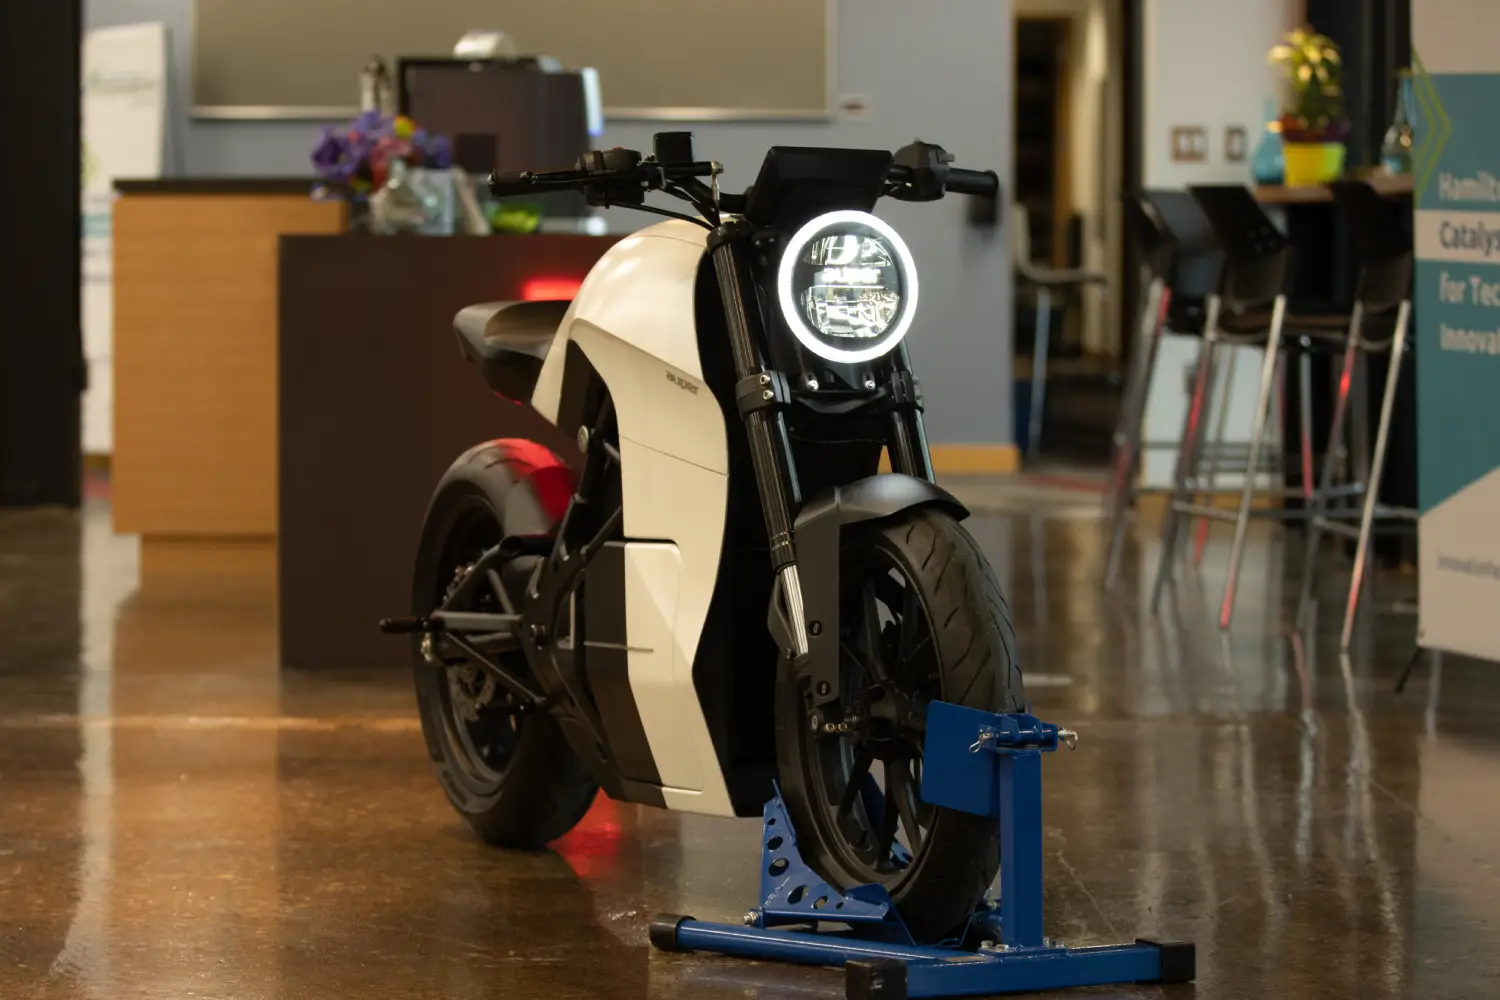 Bicicleta Eletrica que Parece Moto: Estilo e Sustentabilidade em Duas Rodas